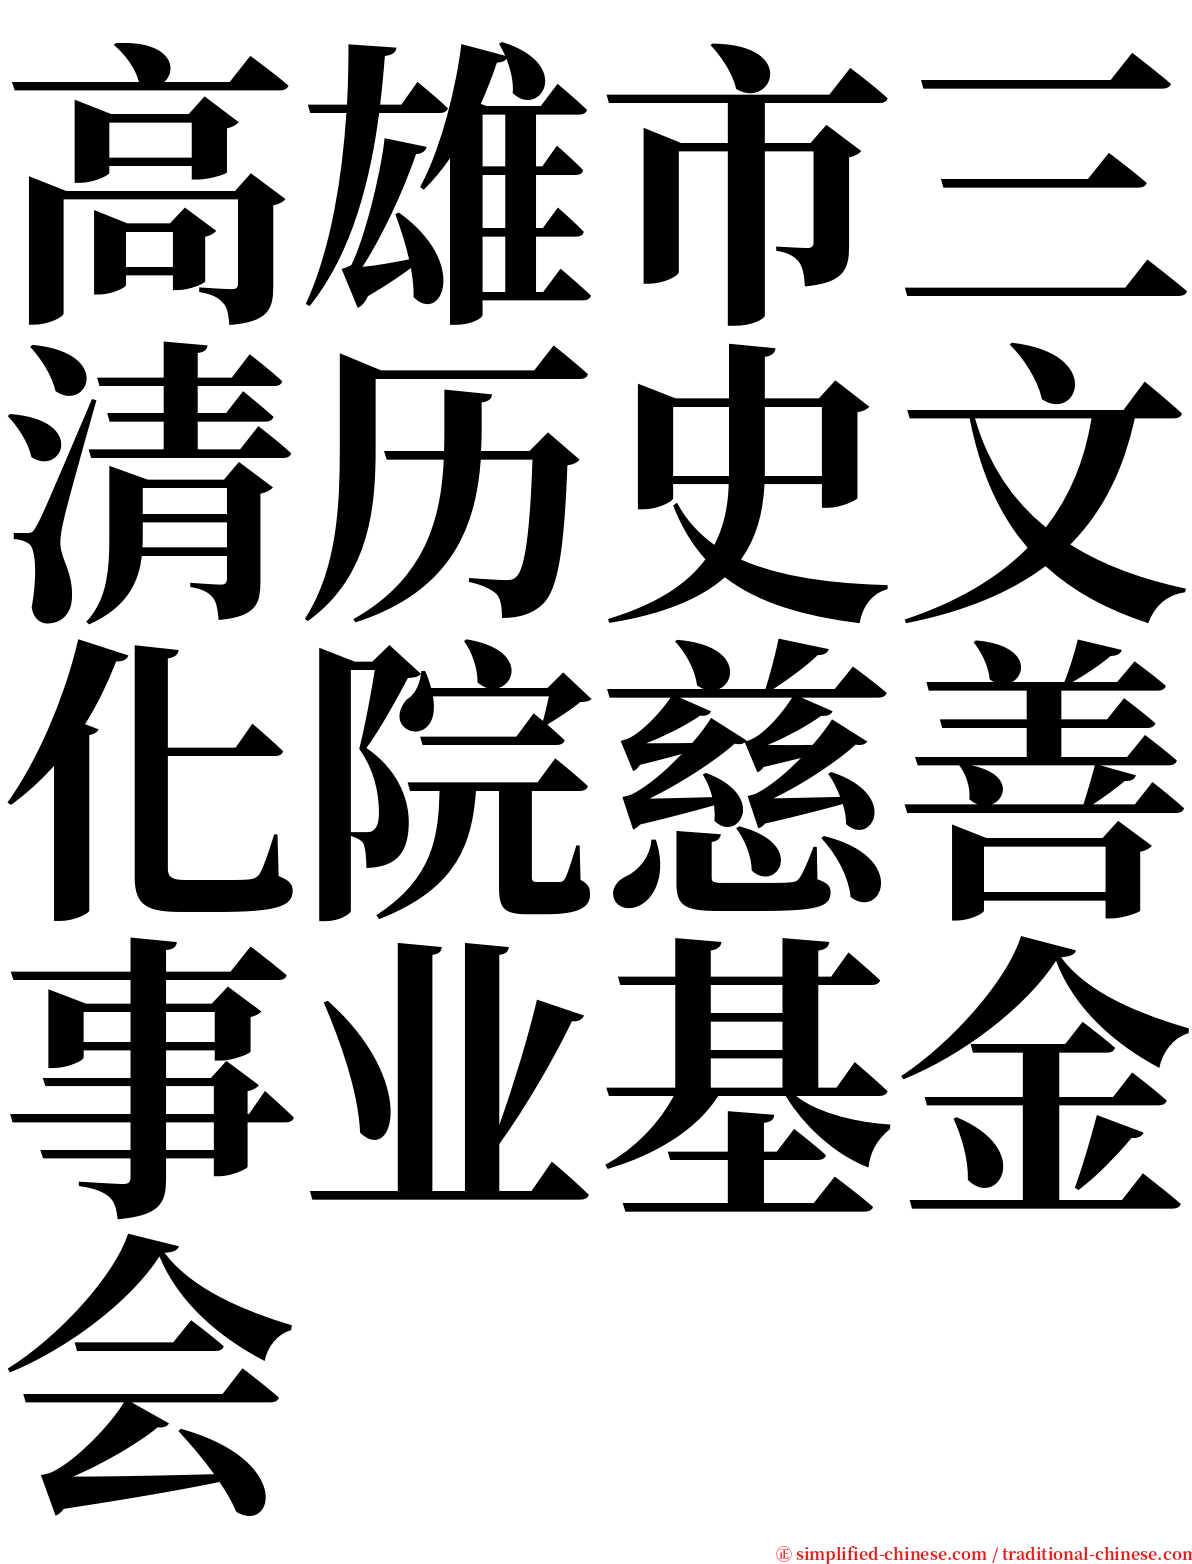 高雄市三清历史文化院慈善事业基金会 serif font